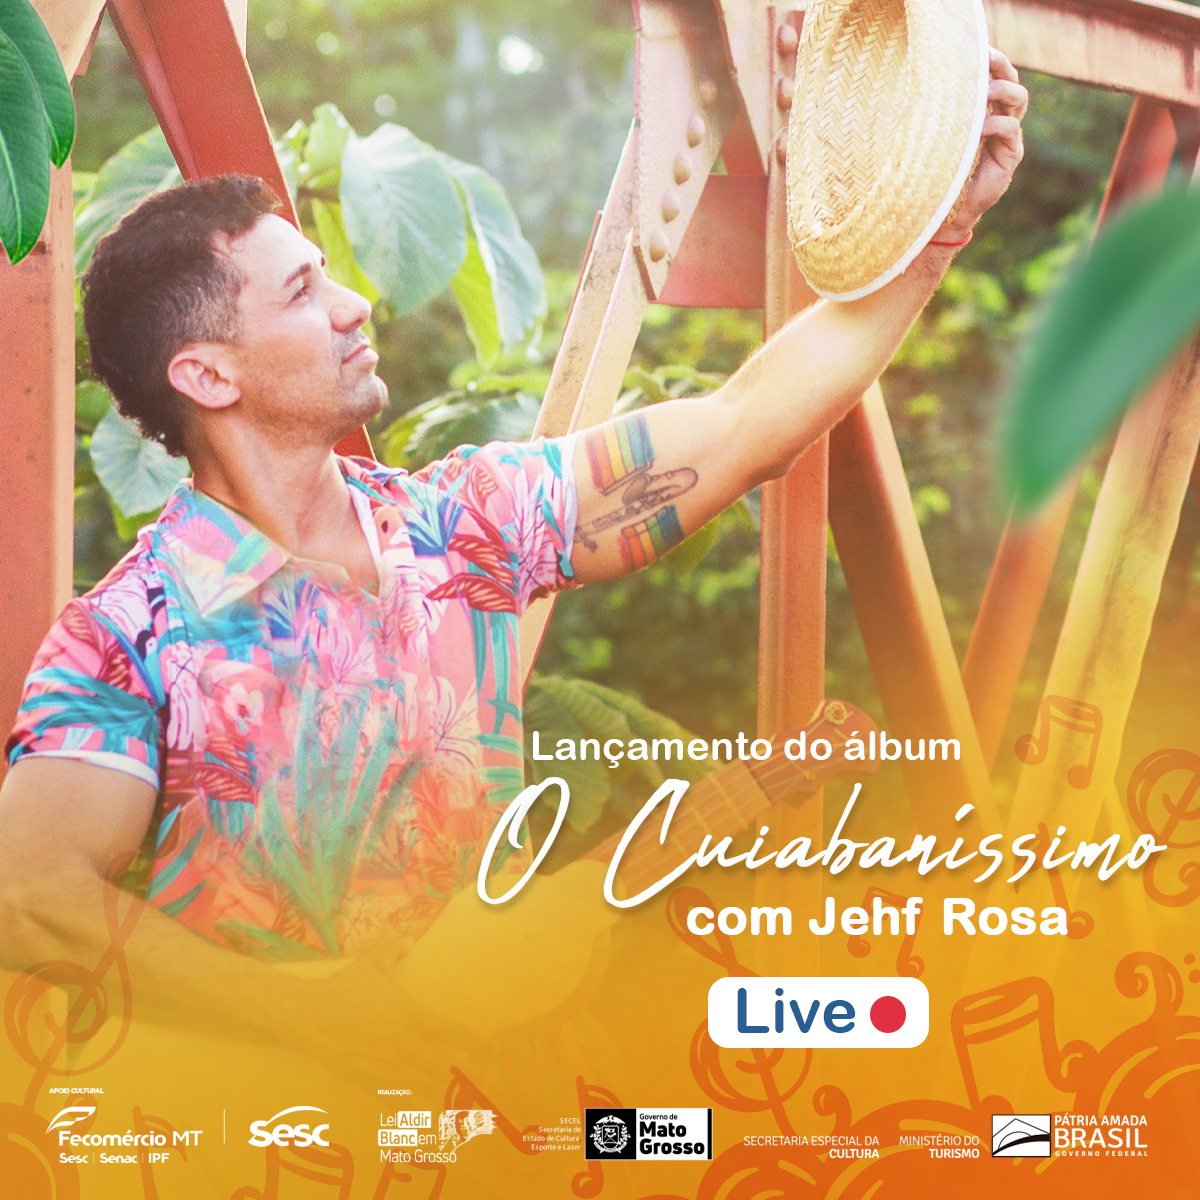 Live Show de Lançamento do álbum musical “O CUIABANÍSSIMO” @ YouTube do Sesc Mato Grosso